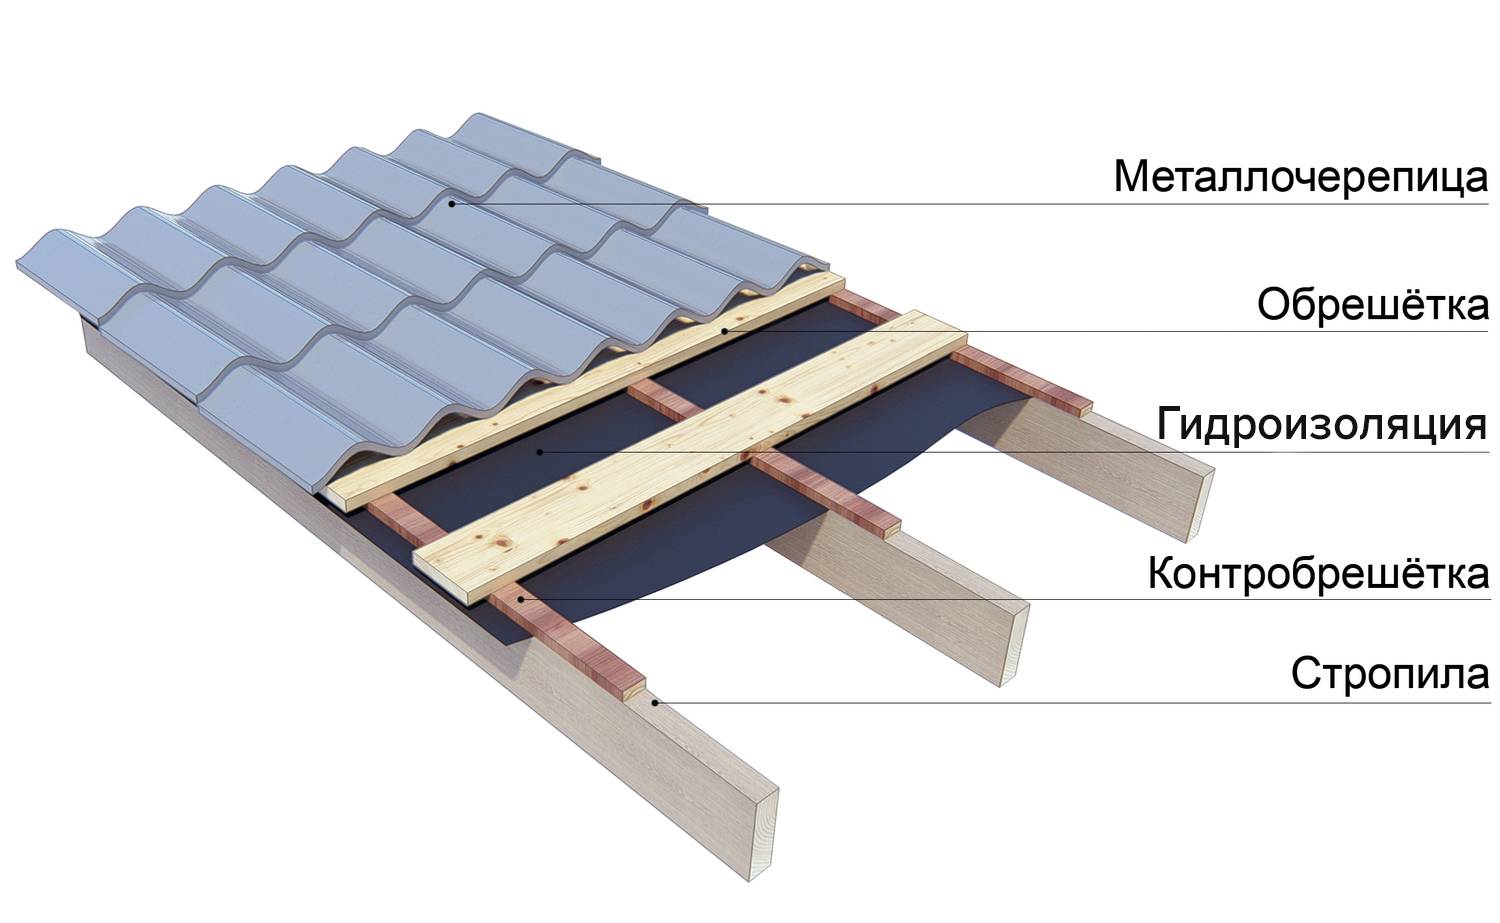 Как сделать гидроизоляцию для крыши под металлочерепицу